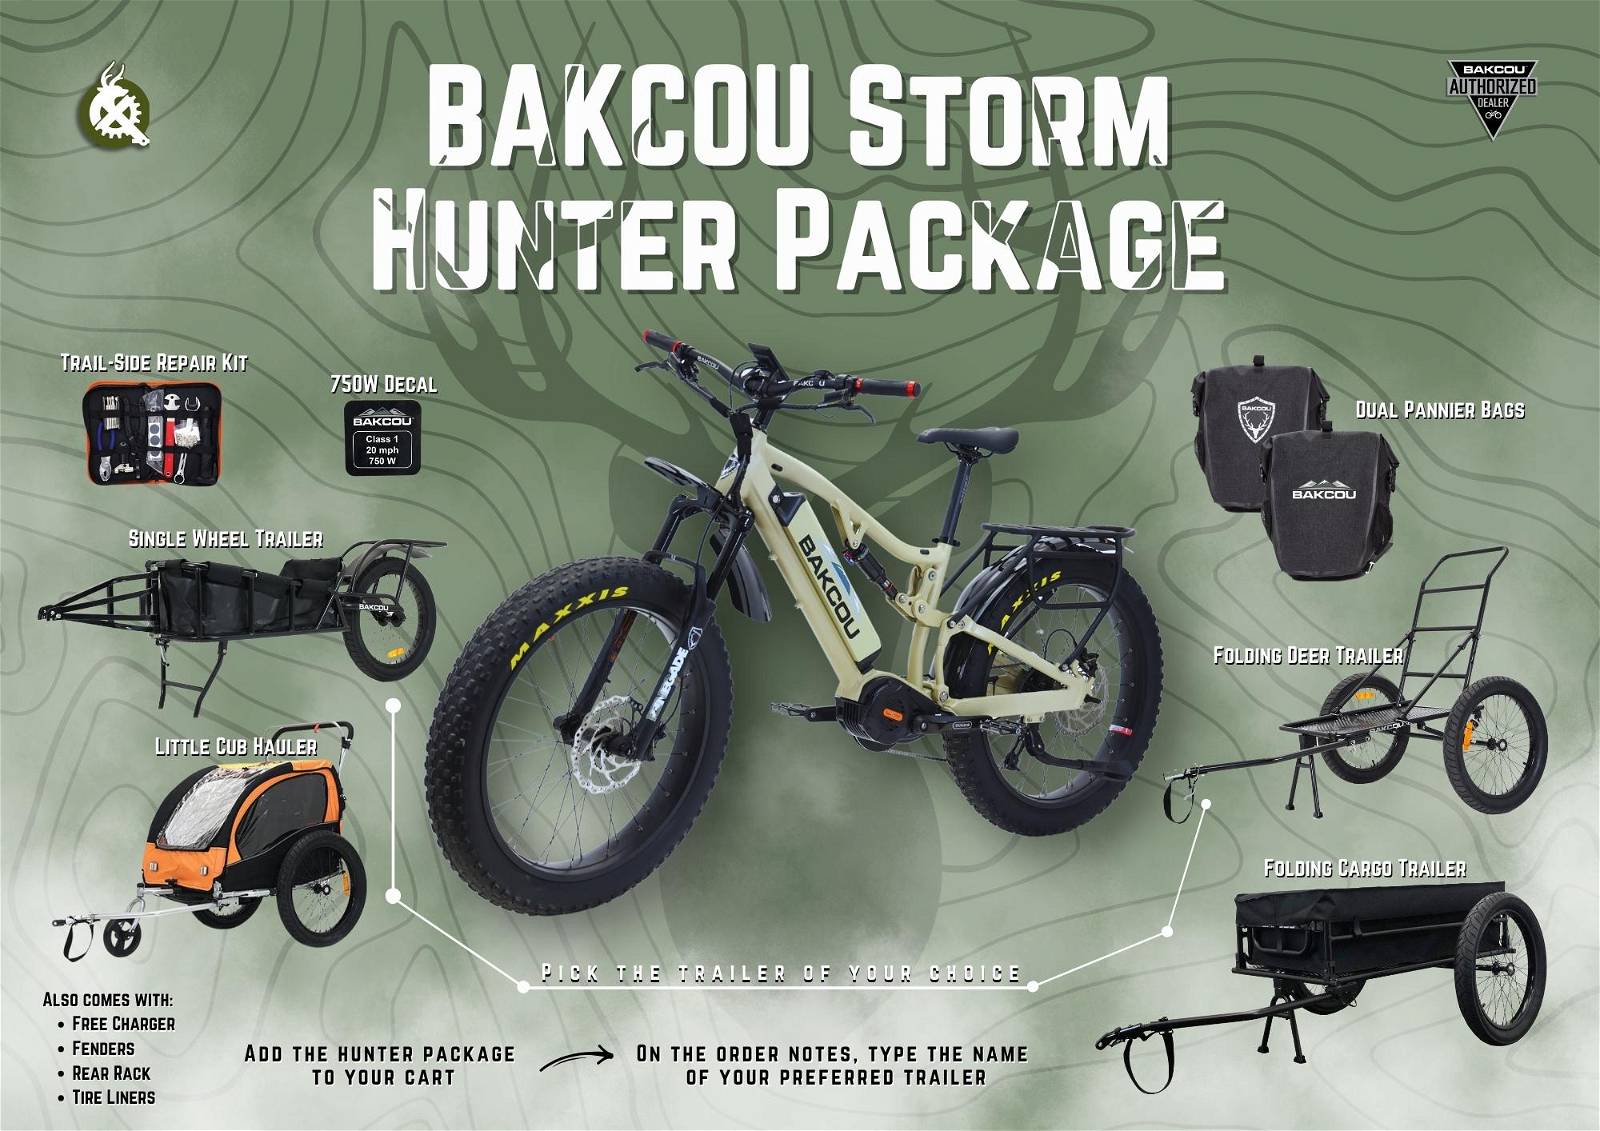 BAKCOU Storm Large Frame Hunter Package